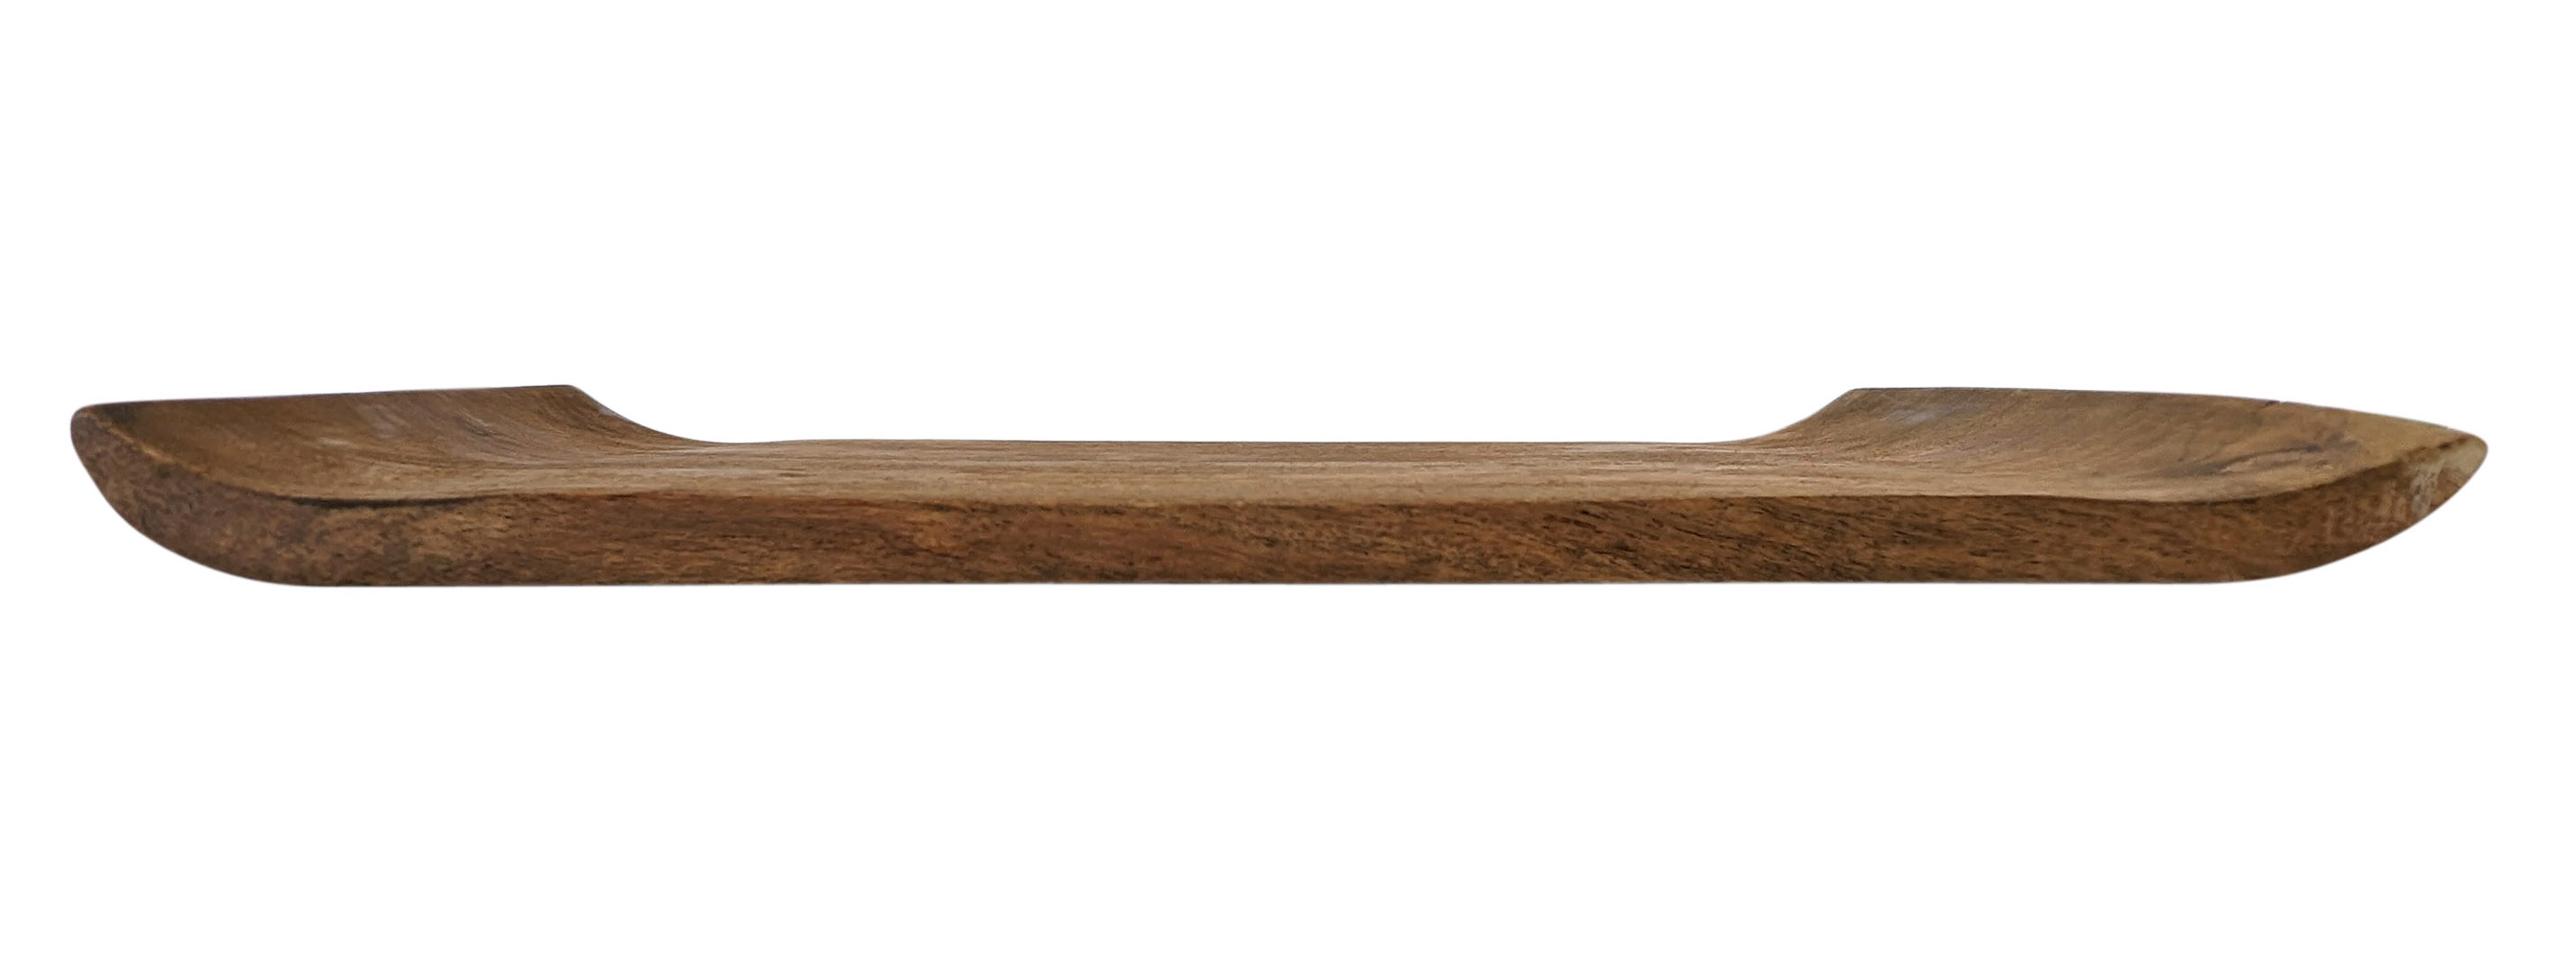 Akazien Servierbrett mit geschwungenen Rändern - 31 x 20 cm - Holz Deko Kerzentablett